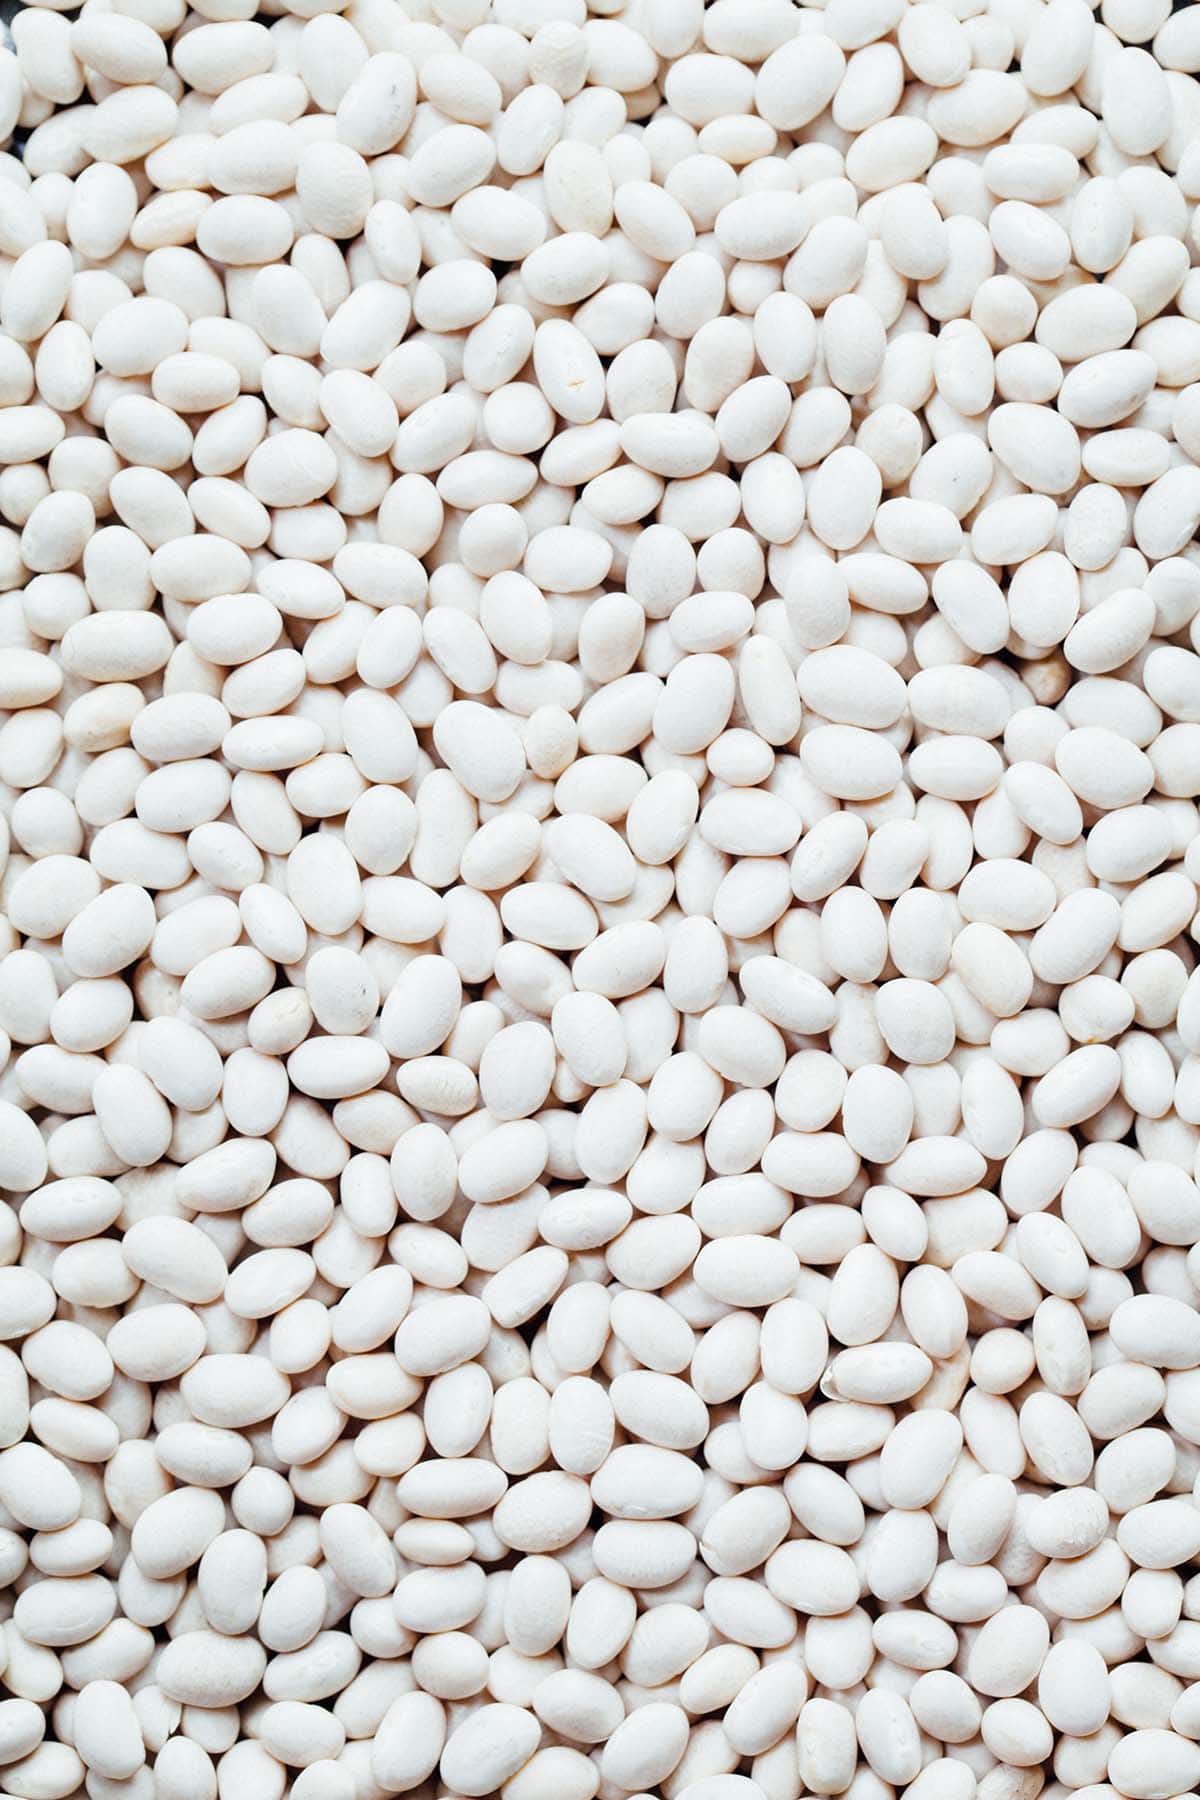 Dry white beans.